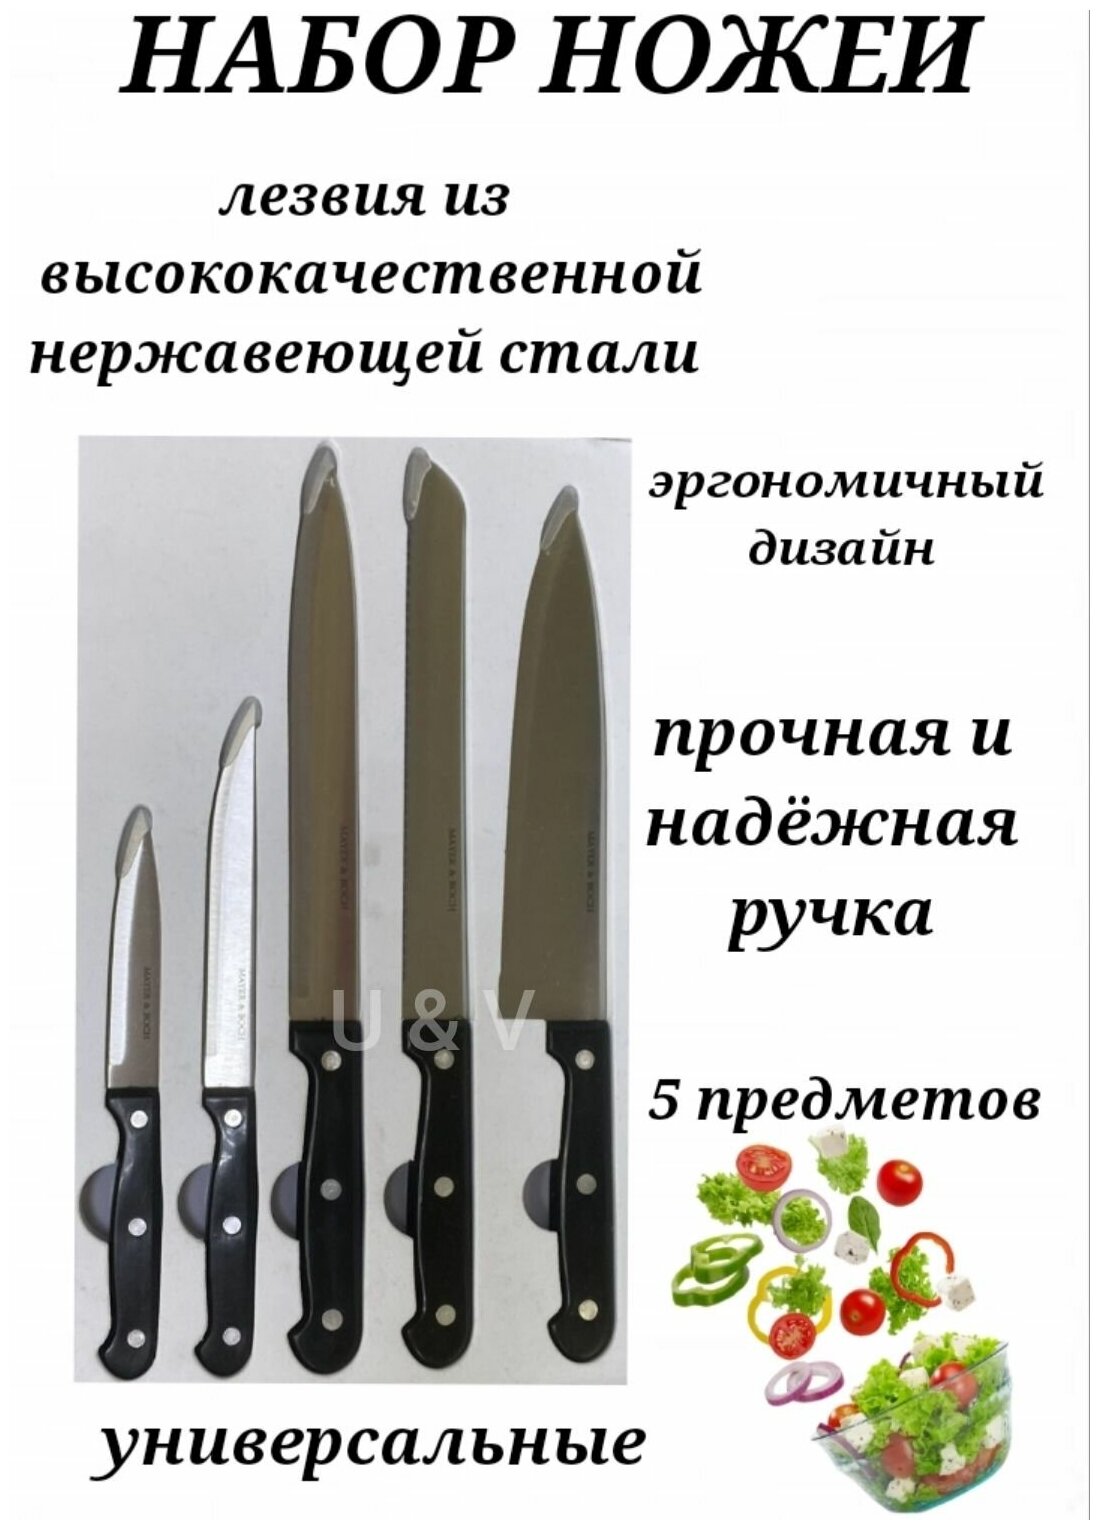 Набор кухонных ножей 5 предметов, Нож поварской, Нож хлебный, Нож разделочный, Нож универсальный, Ножи